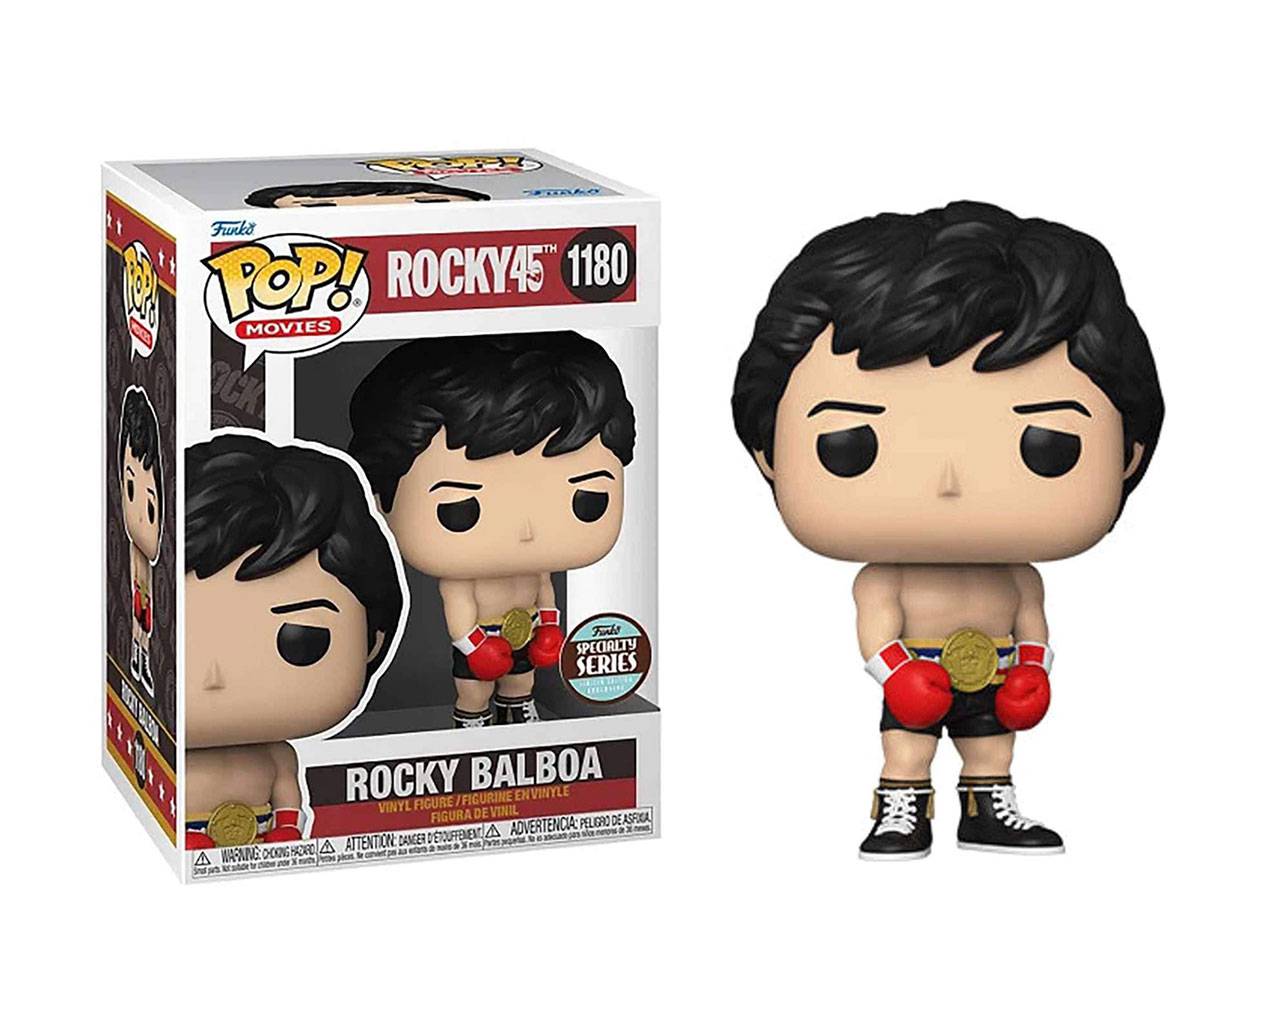 Rocky Balboa with Golden Belt (Specialty Series) Pop! Vinyl